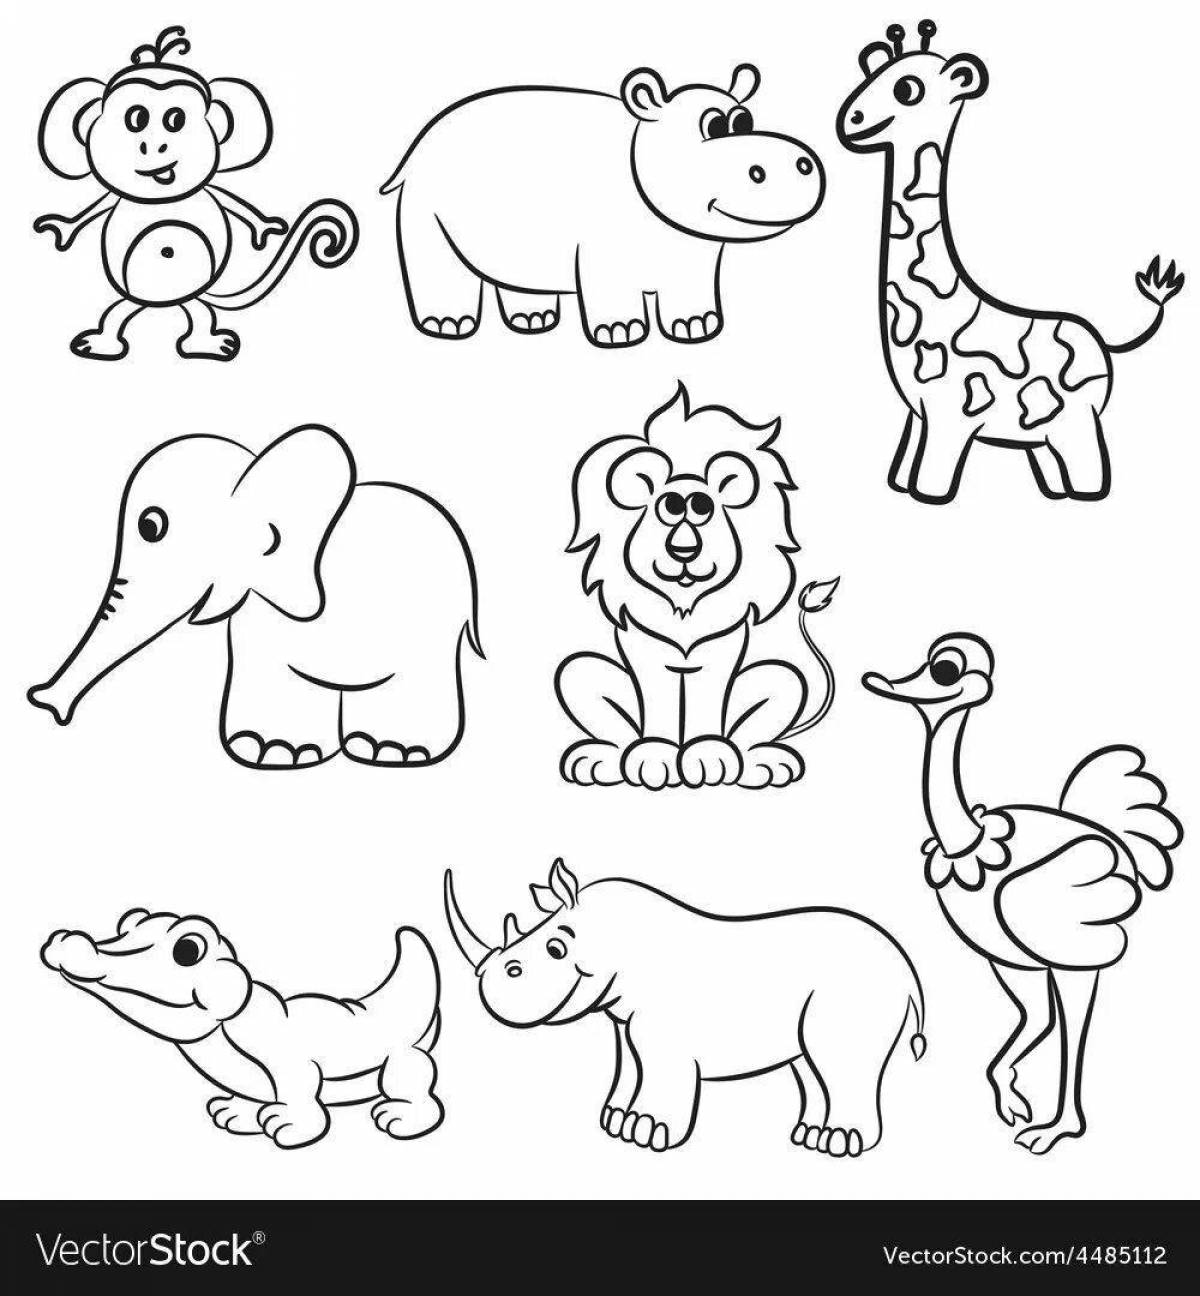 Fun zoo animal coloring page